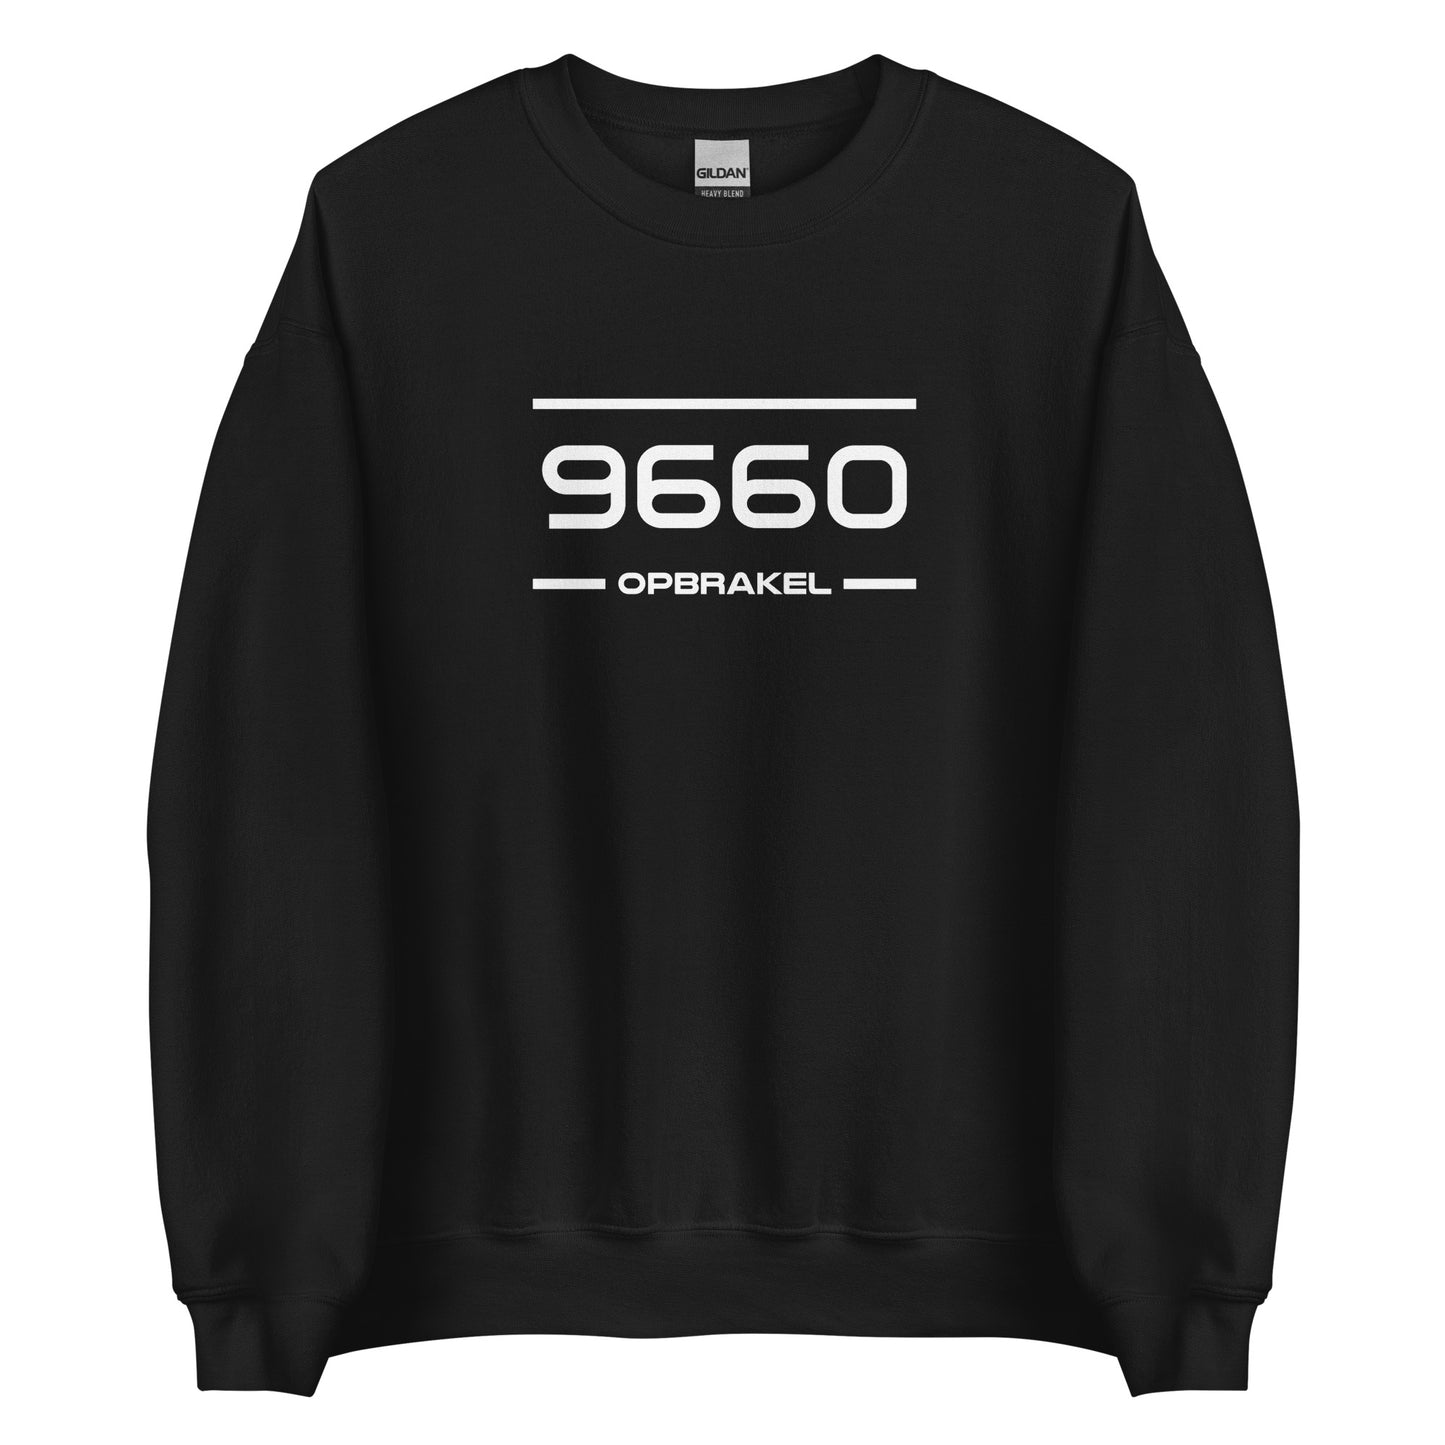 Sweater - 9660 - Opbrakel (M/V)